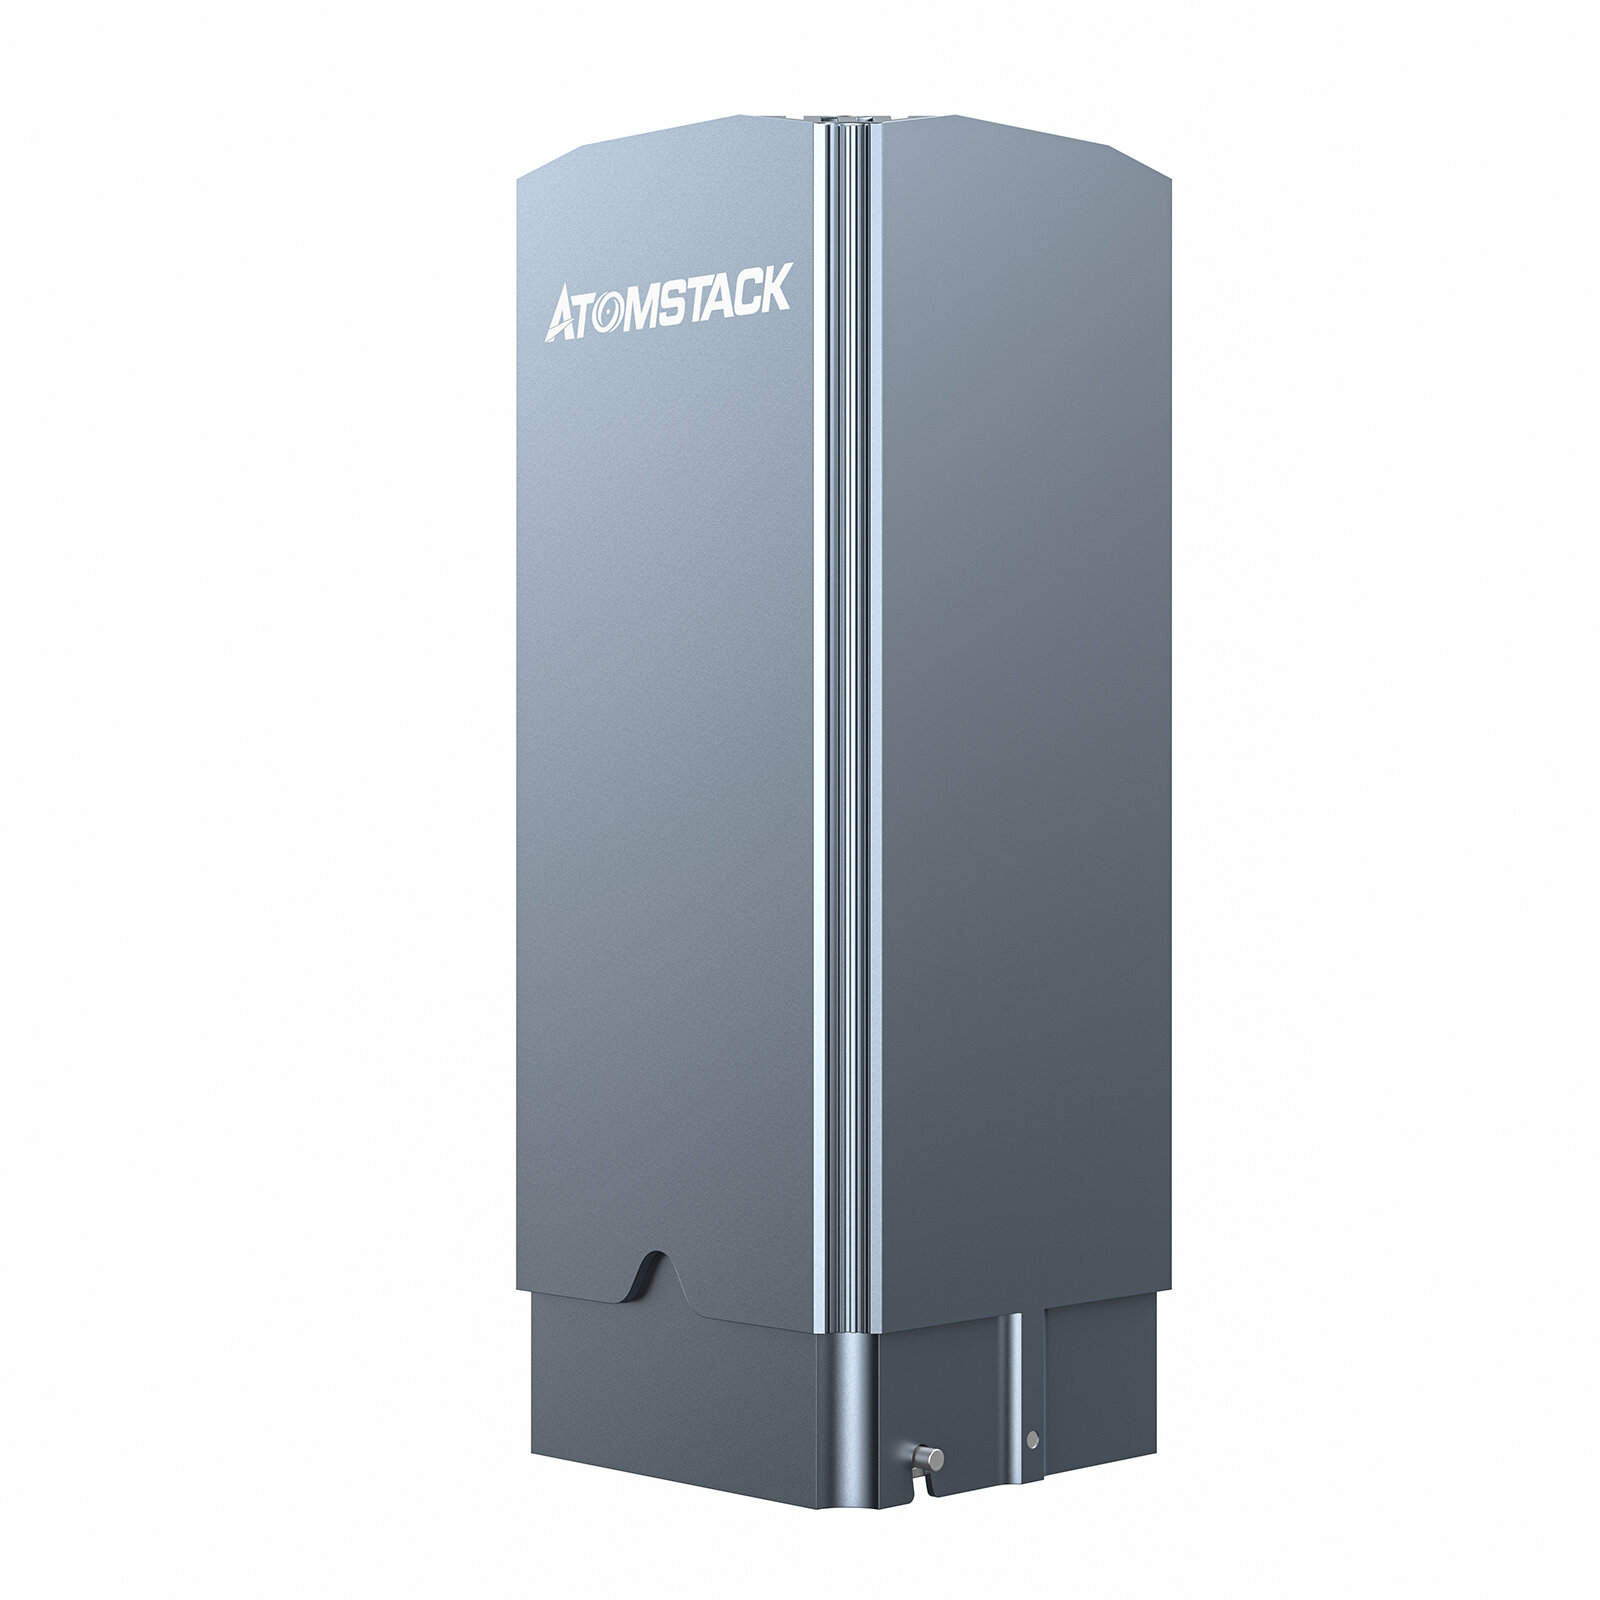 

Atomstack R30 Инфракрасный модуль Лазер Fiber Лазер Для гравировки всех металлов и пластика